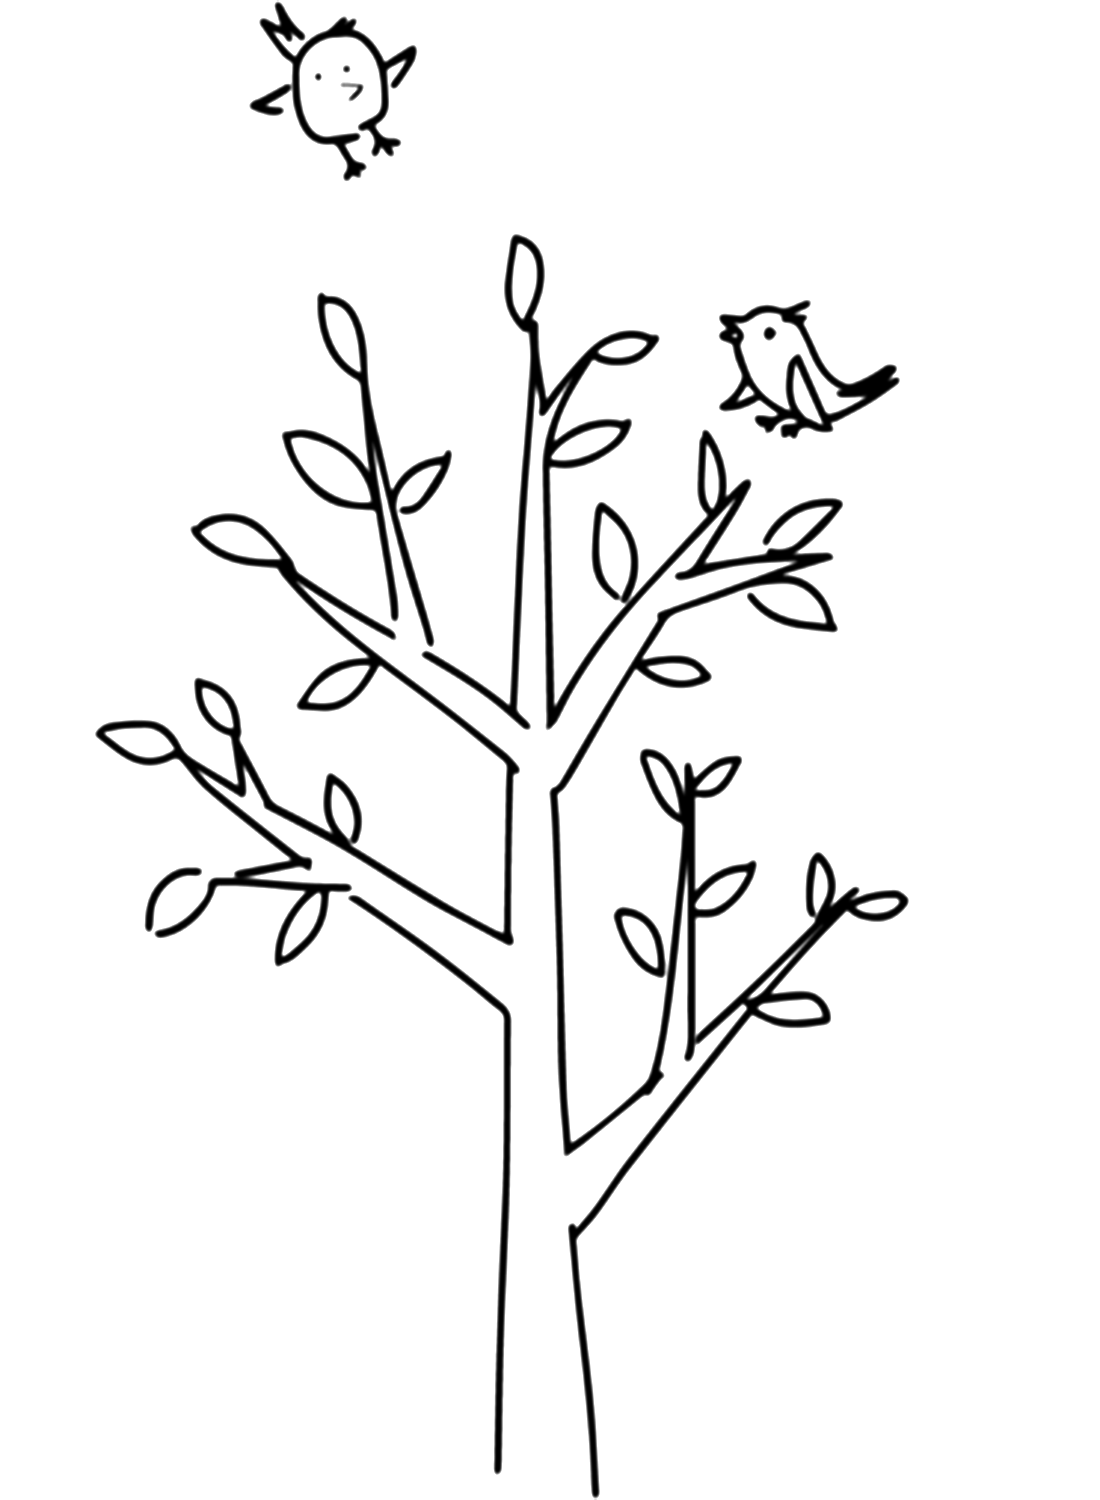 Página para colorir de árvore de primavera com pássaros